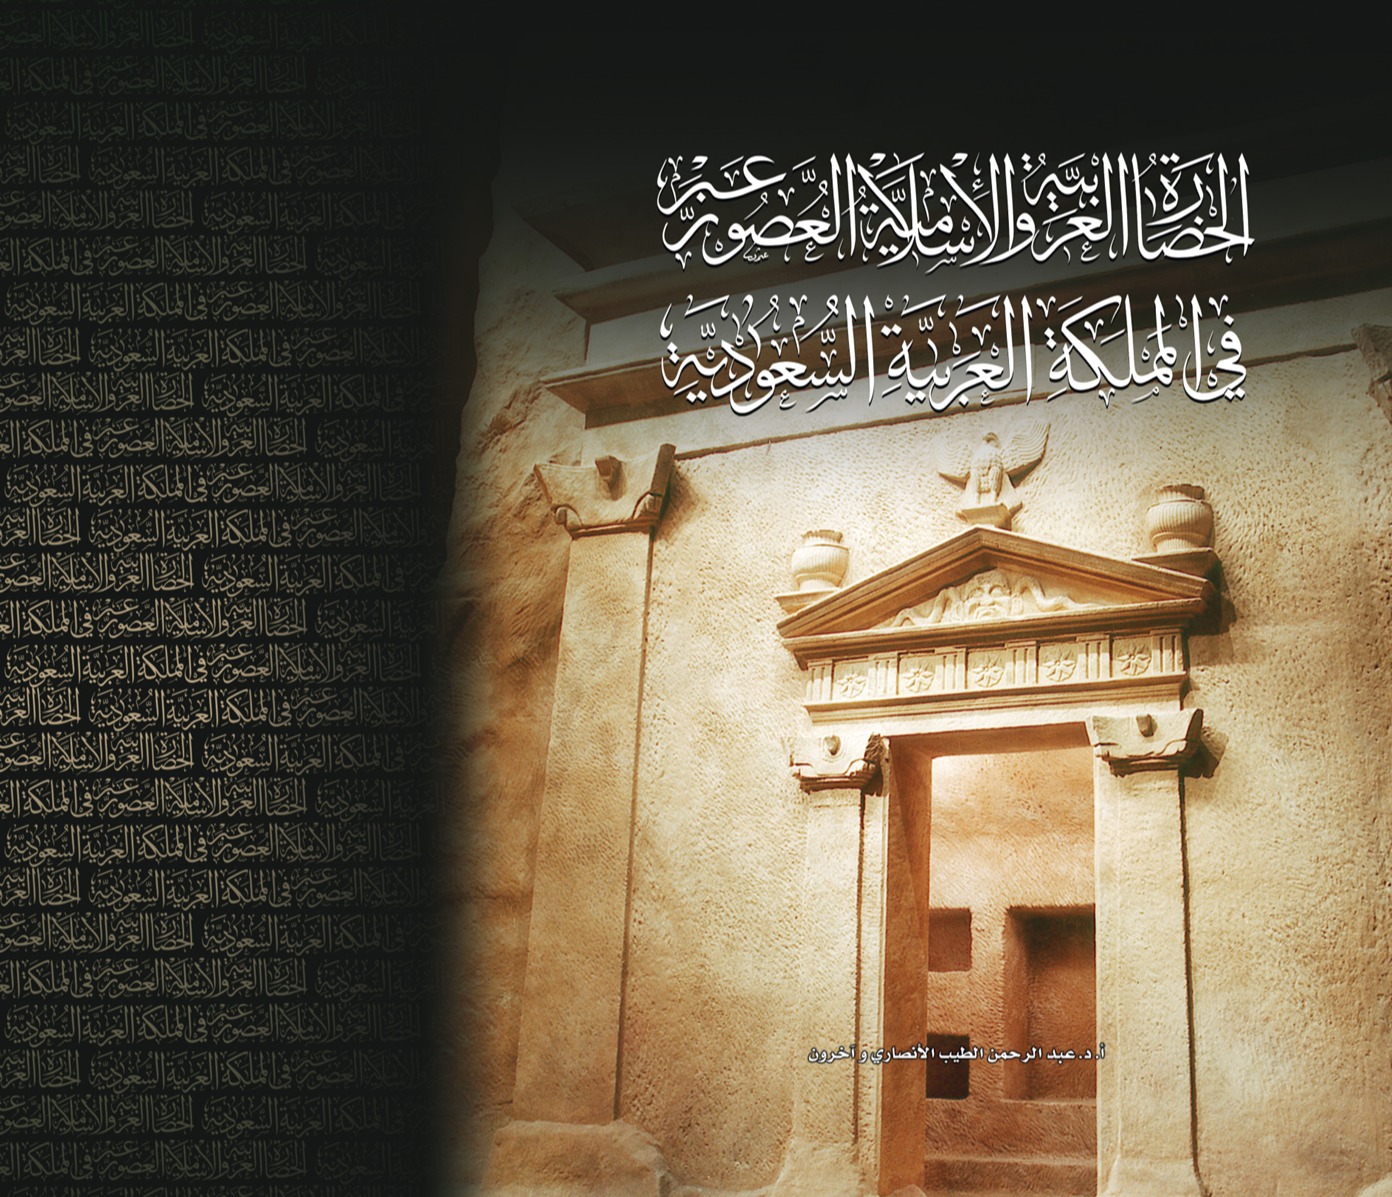 الحضارة العربية والإسلامية عبر العصور في المملكة العربية السعودية *